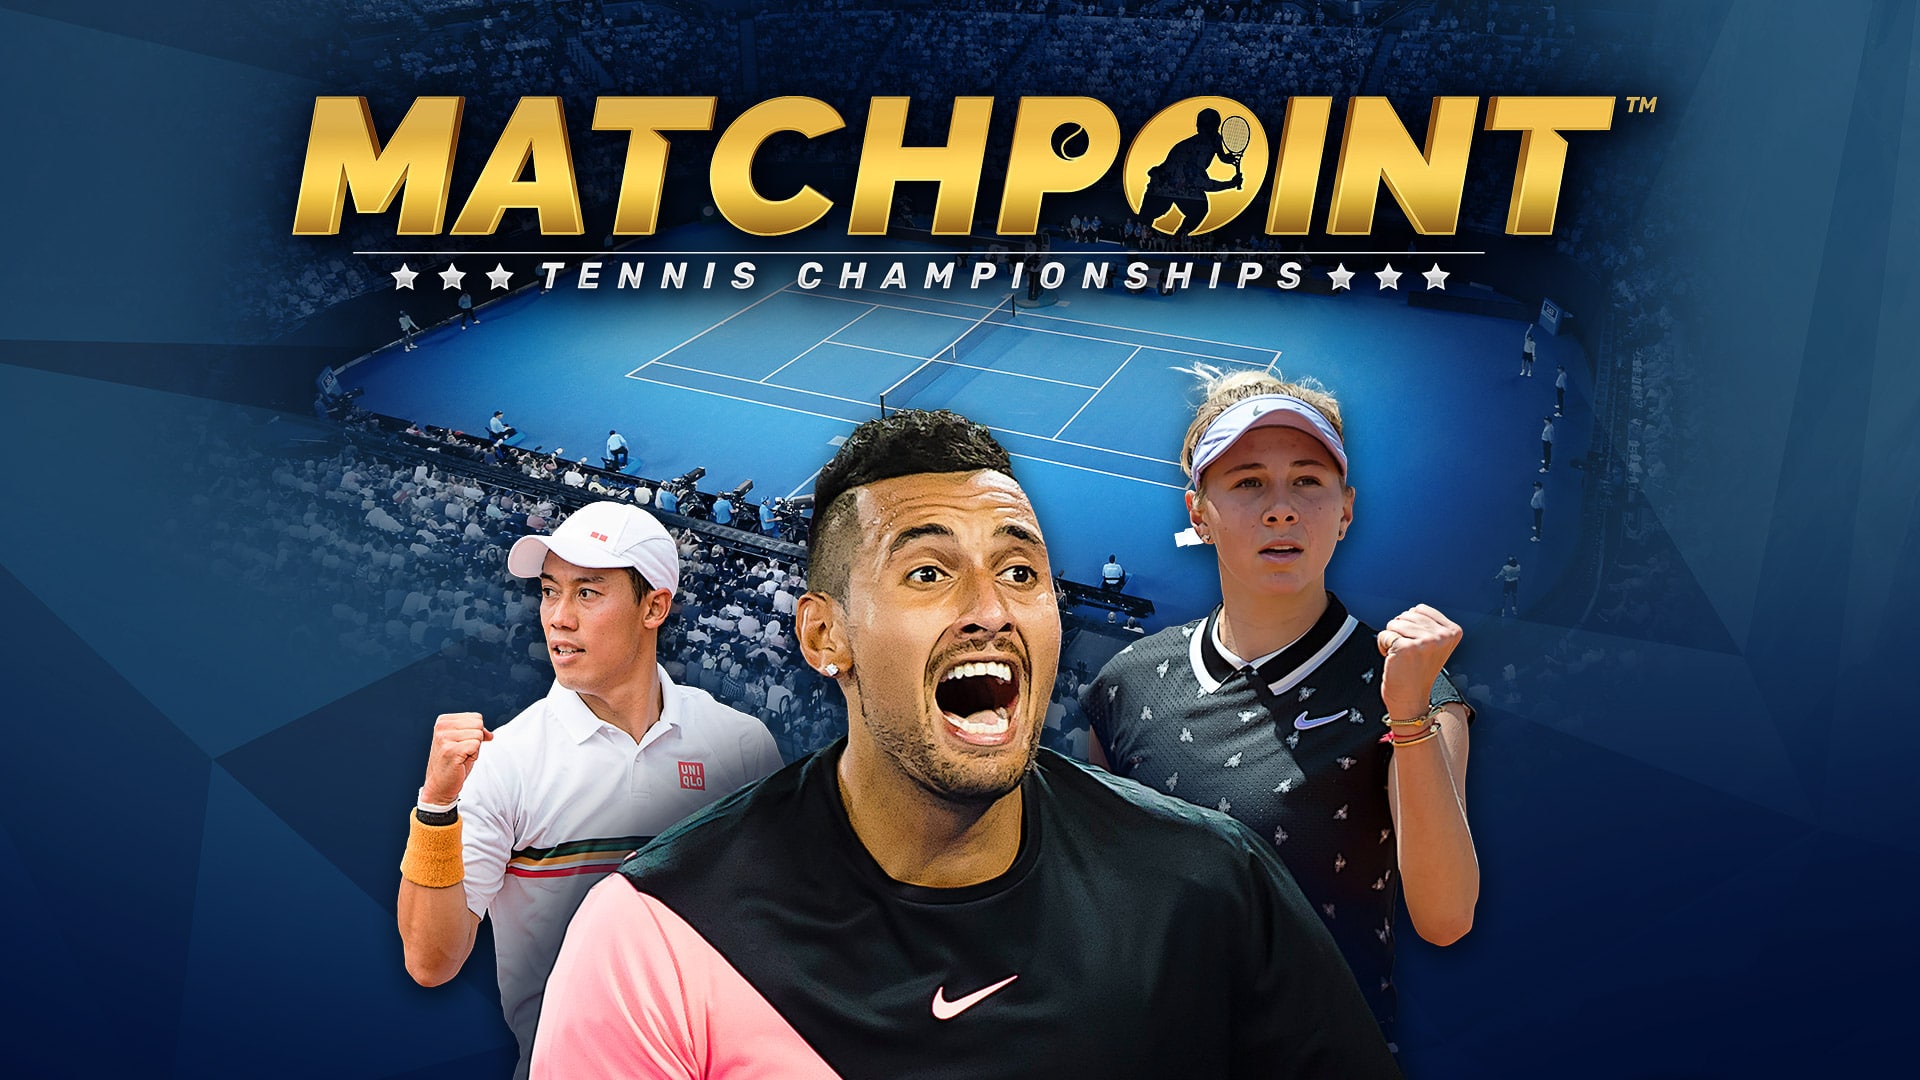 Match Point – Tennis Championship is nu beschikbaar